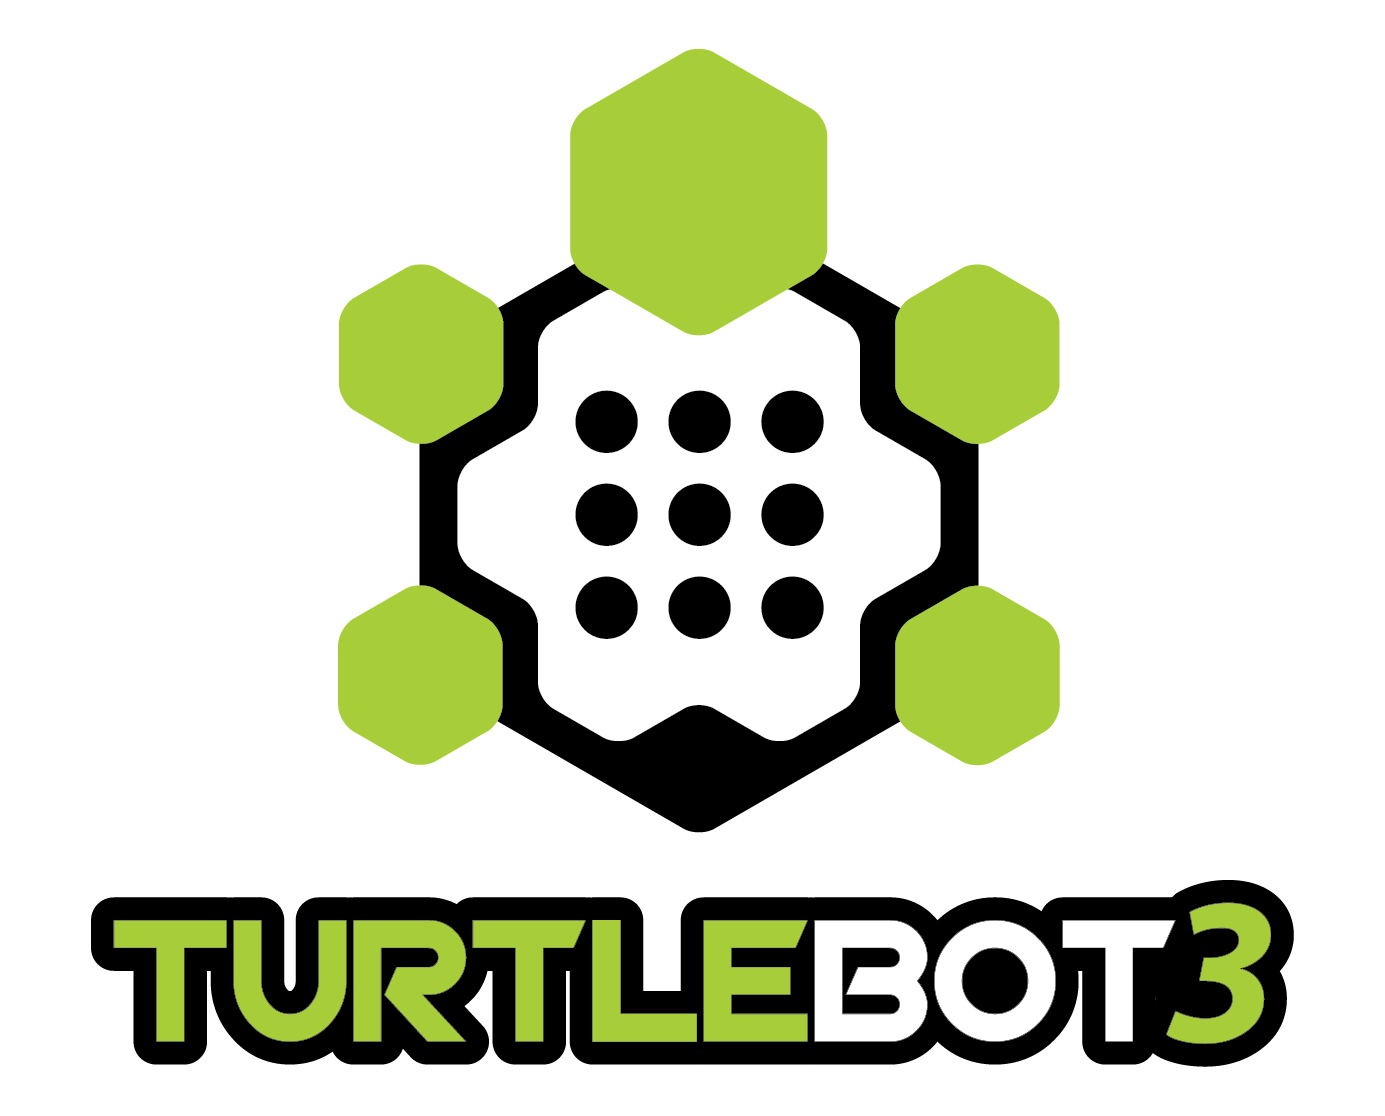 TurtleBot3